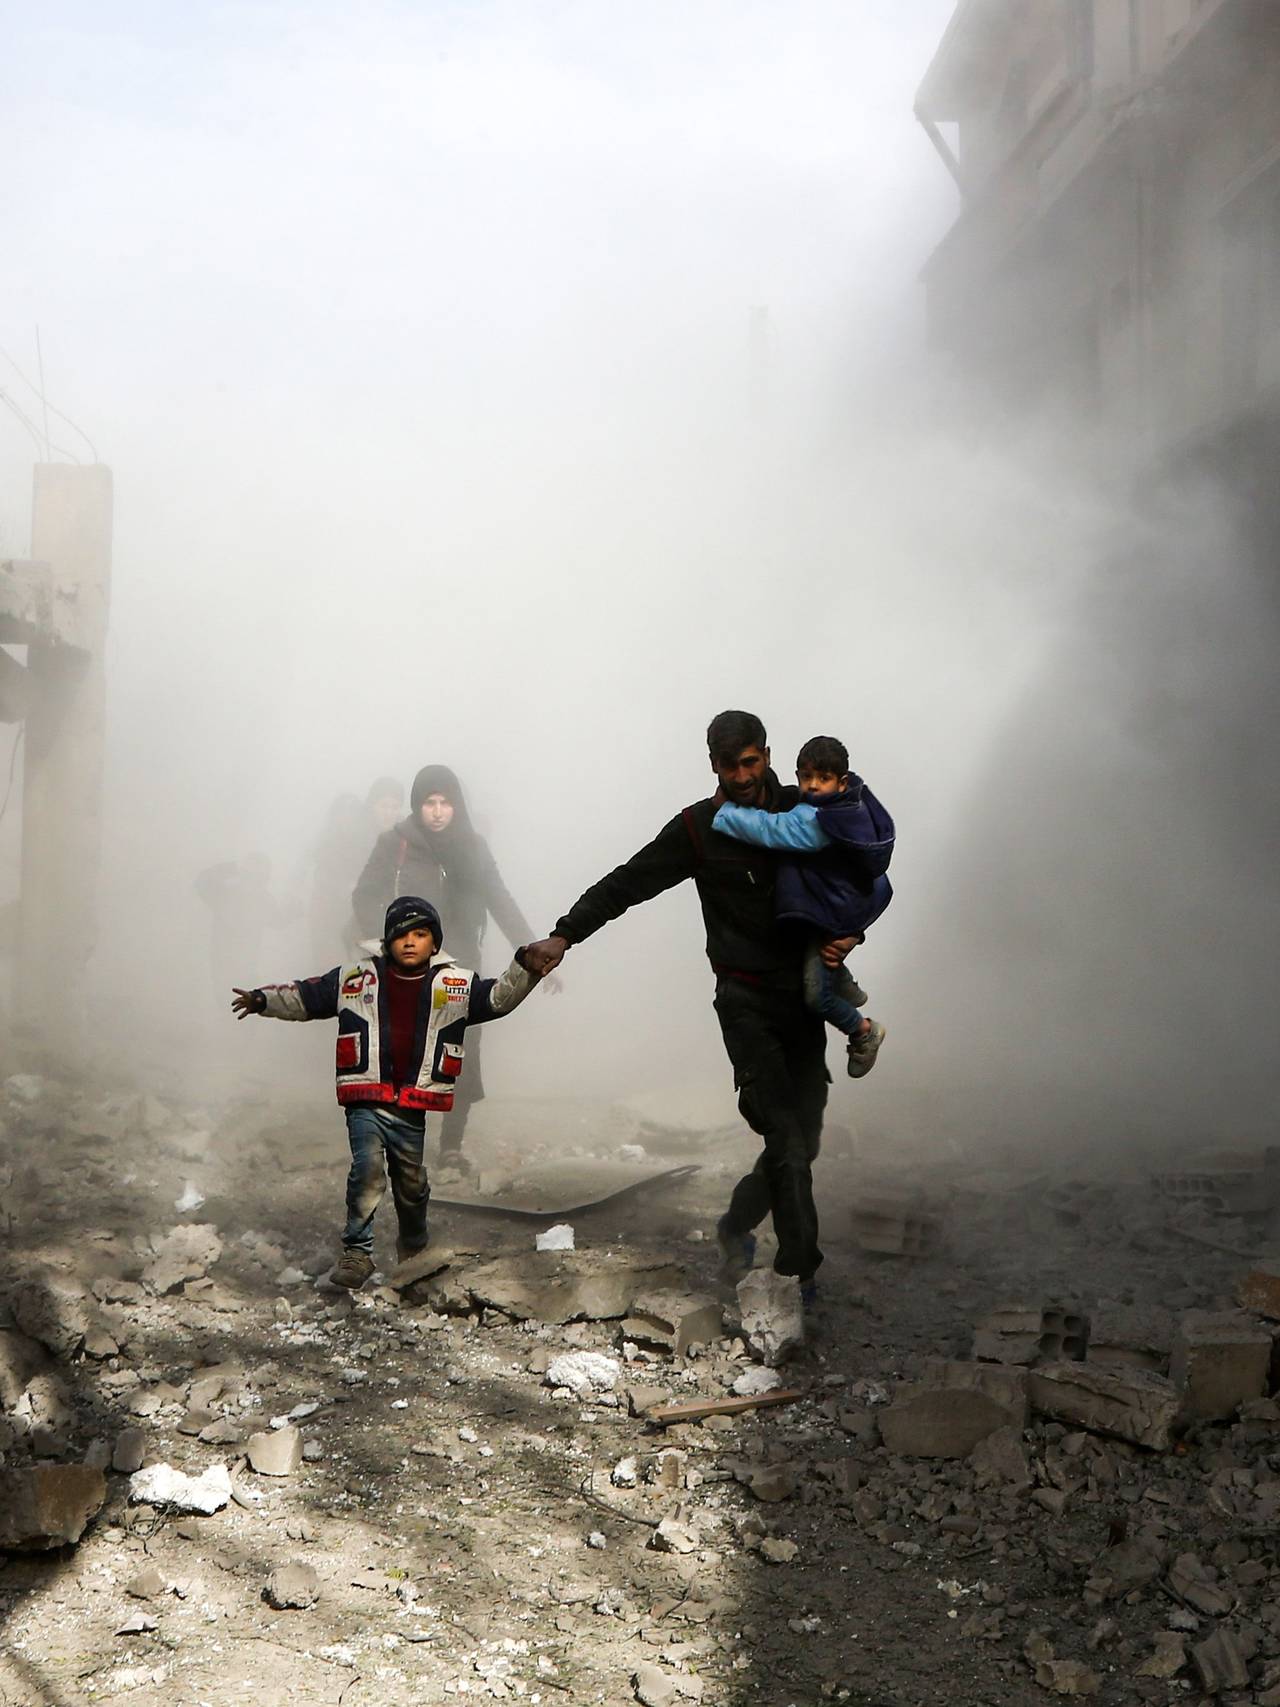 En mann med to barn løper i sikkerhet etter flyangrep i nærheten av Damaskus i Syria i 2019. 